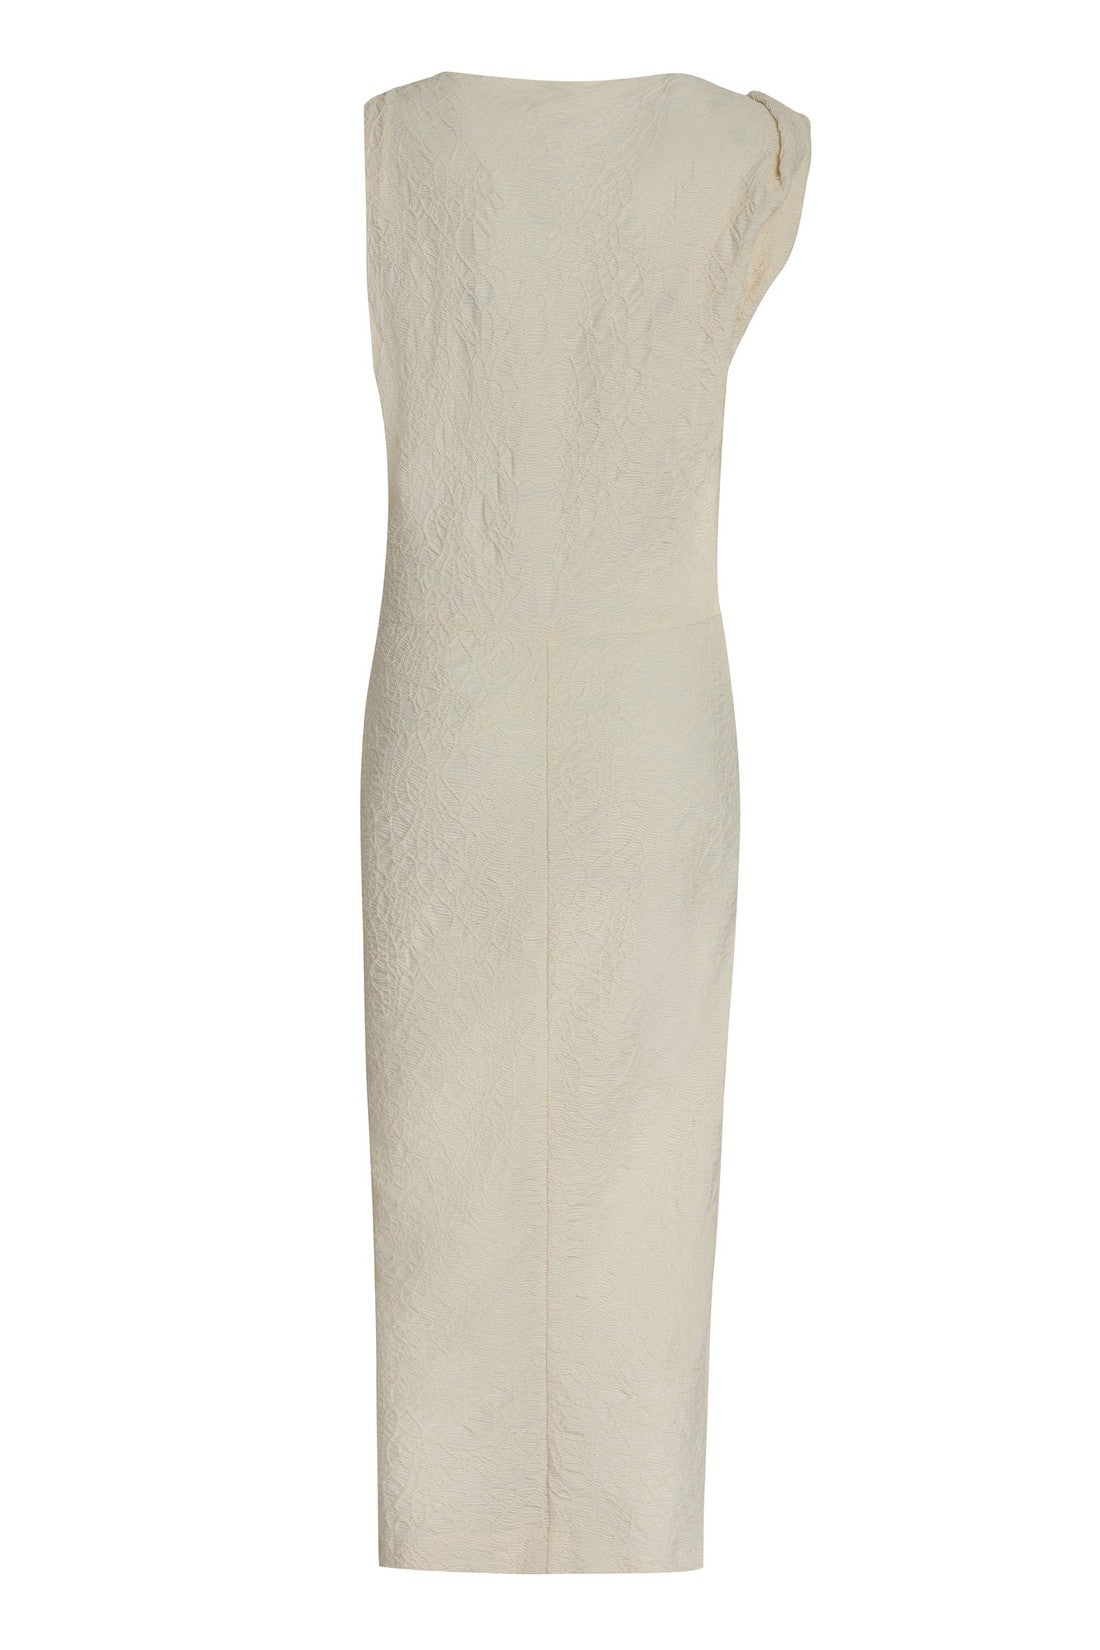 Isabel Marant-OUTLET-SALE-Franzy Cotton-blend dress-ARCHIVIST